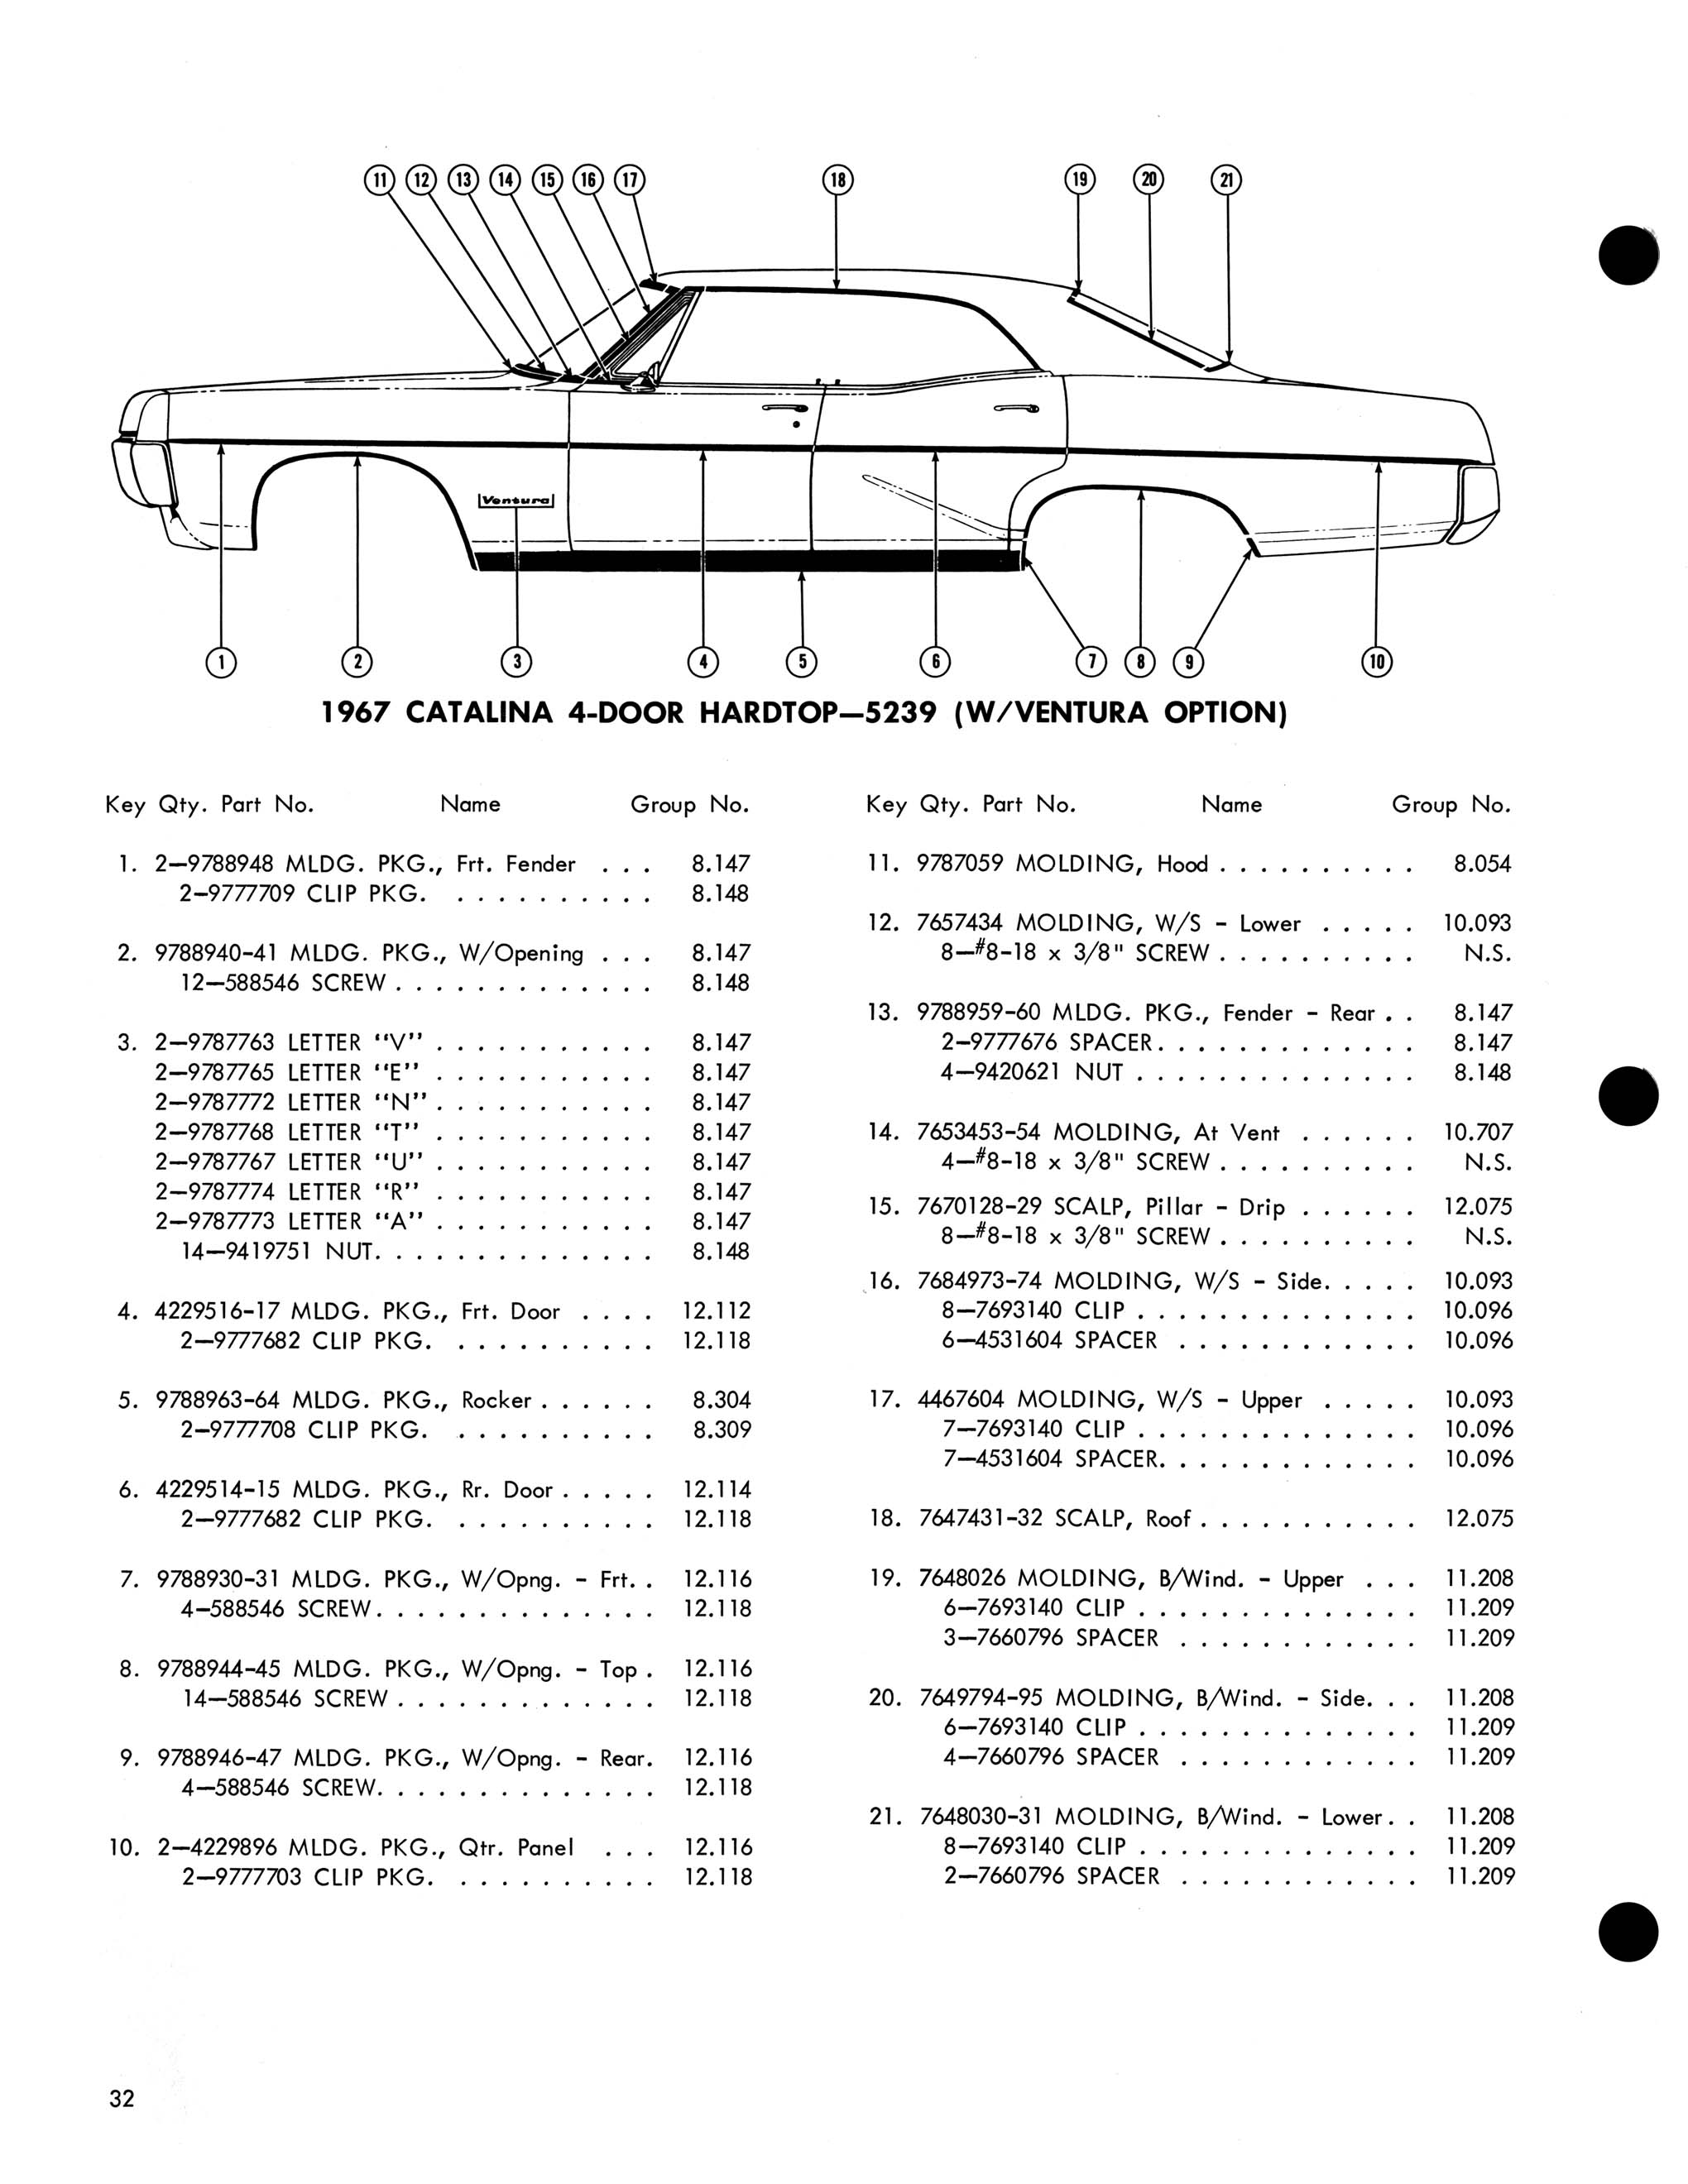 1967 Pontiac Molding and Clip Catalog-32